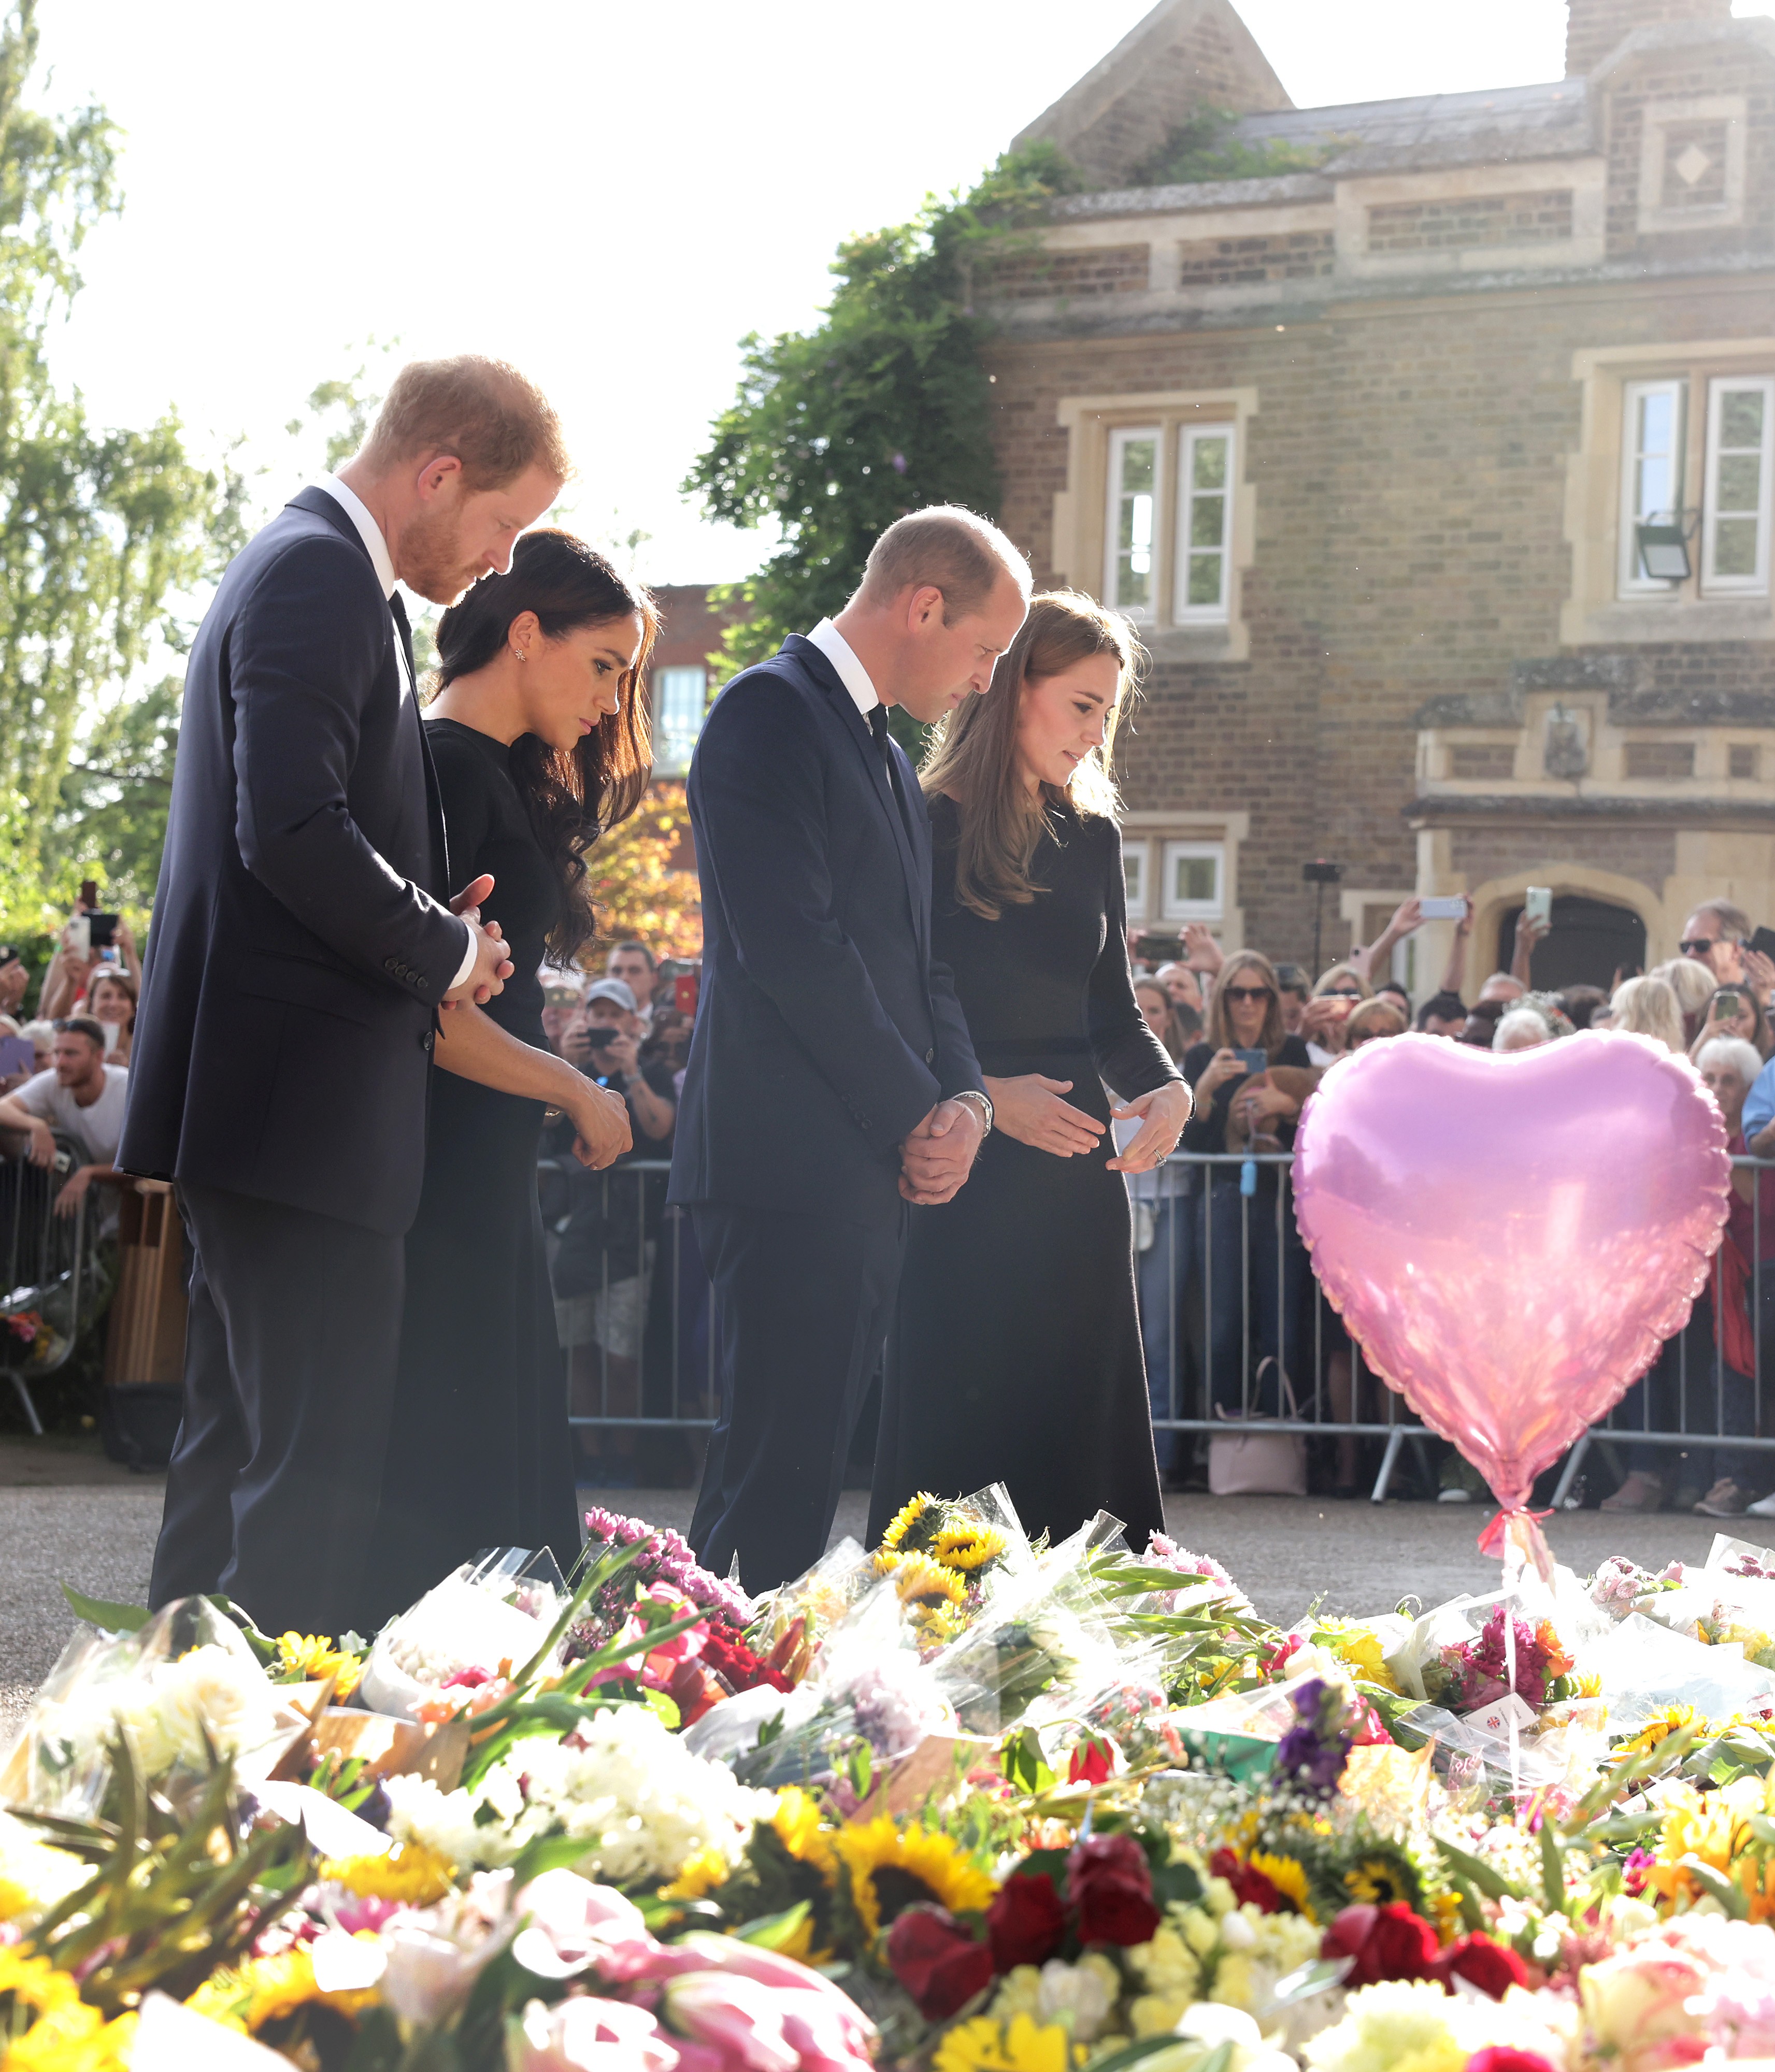 A Duquesa Kate Middleton, o Príncipe William, o Príncipe Harry e a atriz e Duquea Meghan Markle nos portões do Palácio de Windsor vendo as flores e as cartas deixadas pelos súditos reais em homenagem à Rainha Elizabeth II (1926-2022) (Foto: Getty Images)